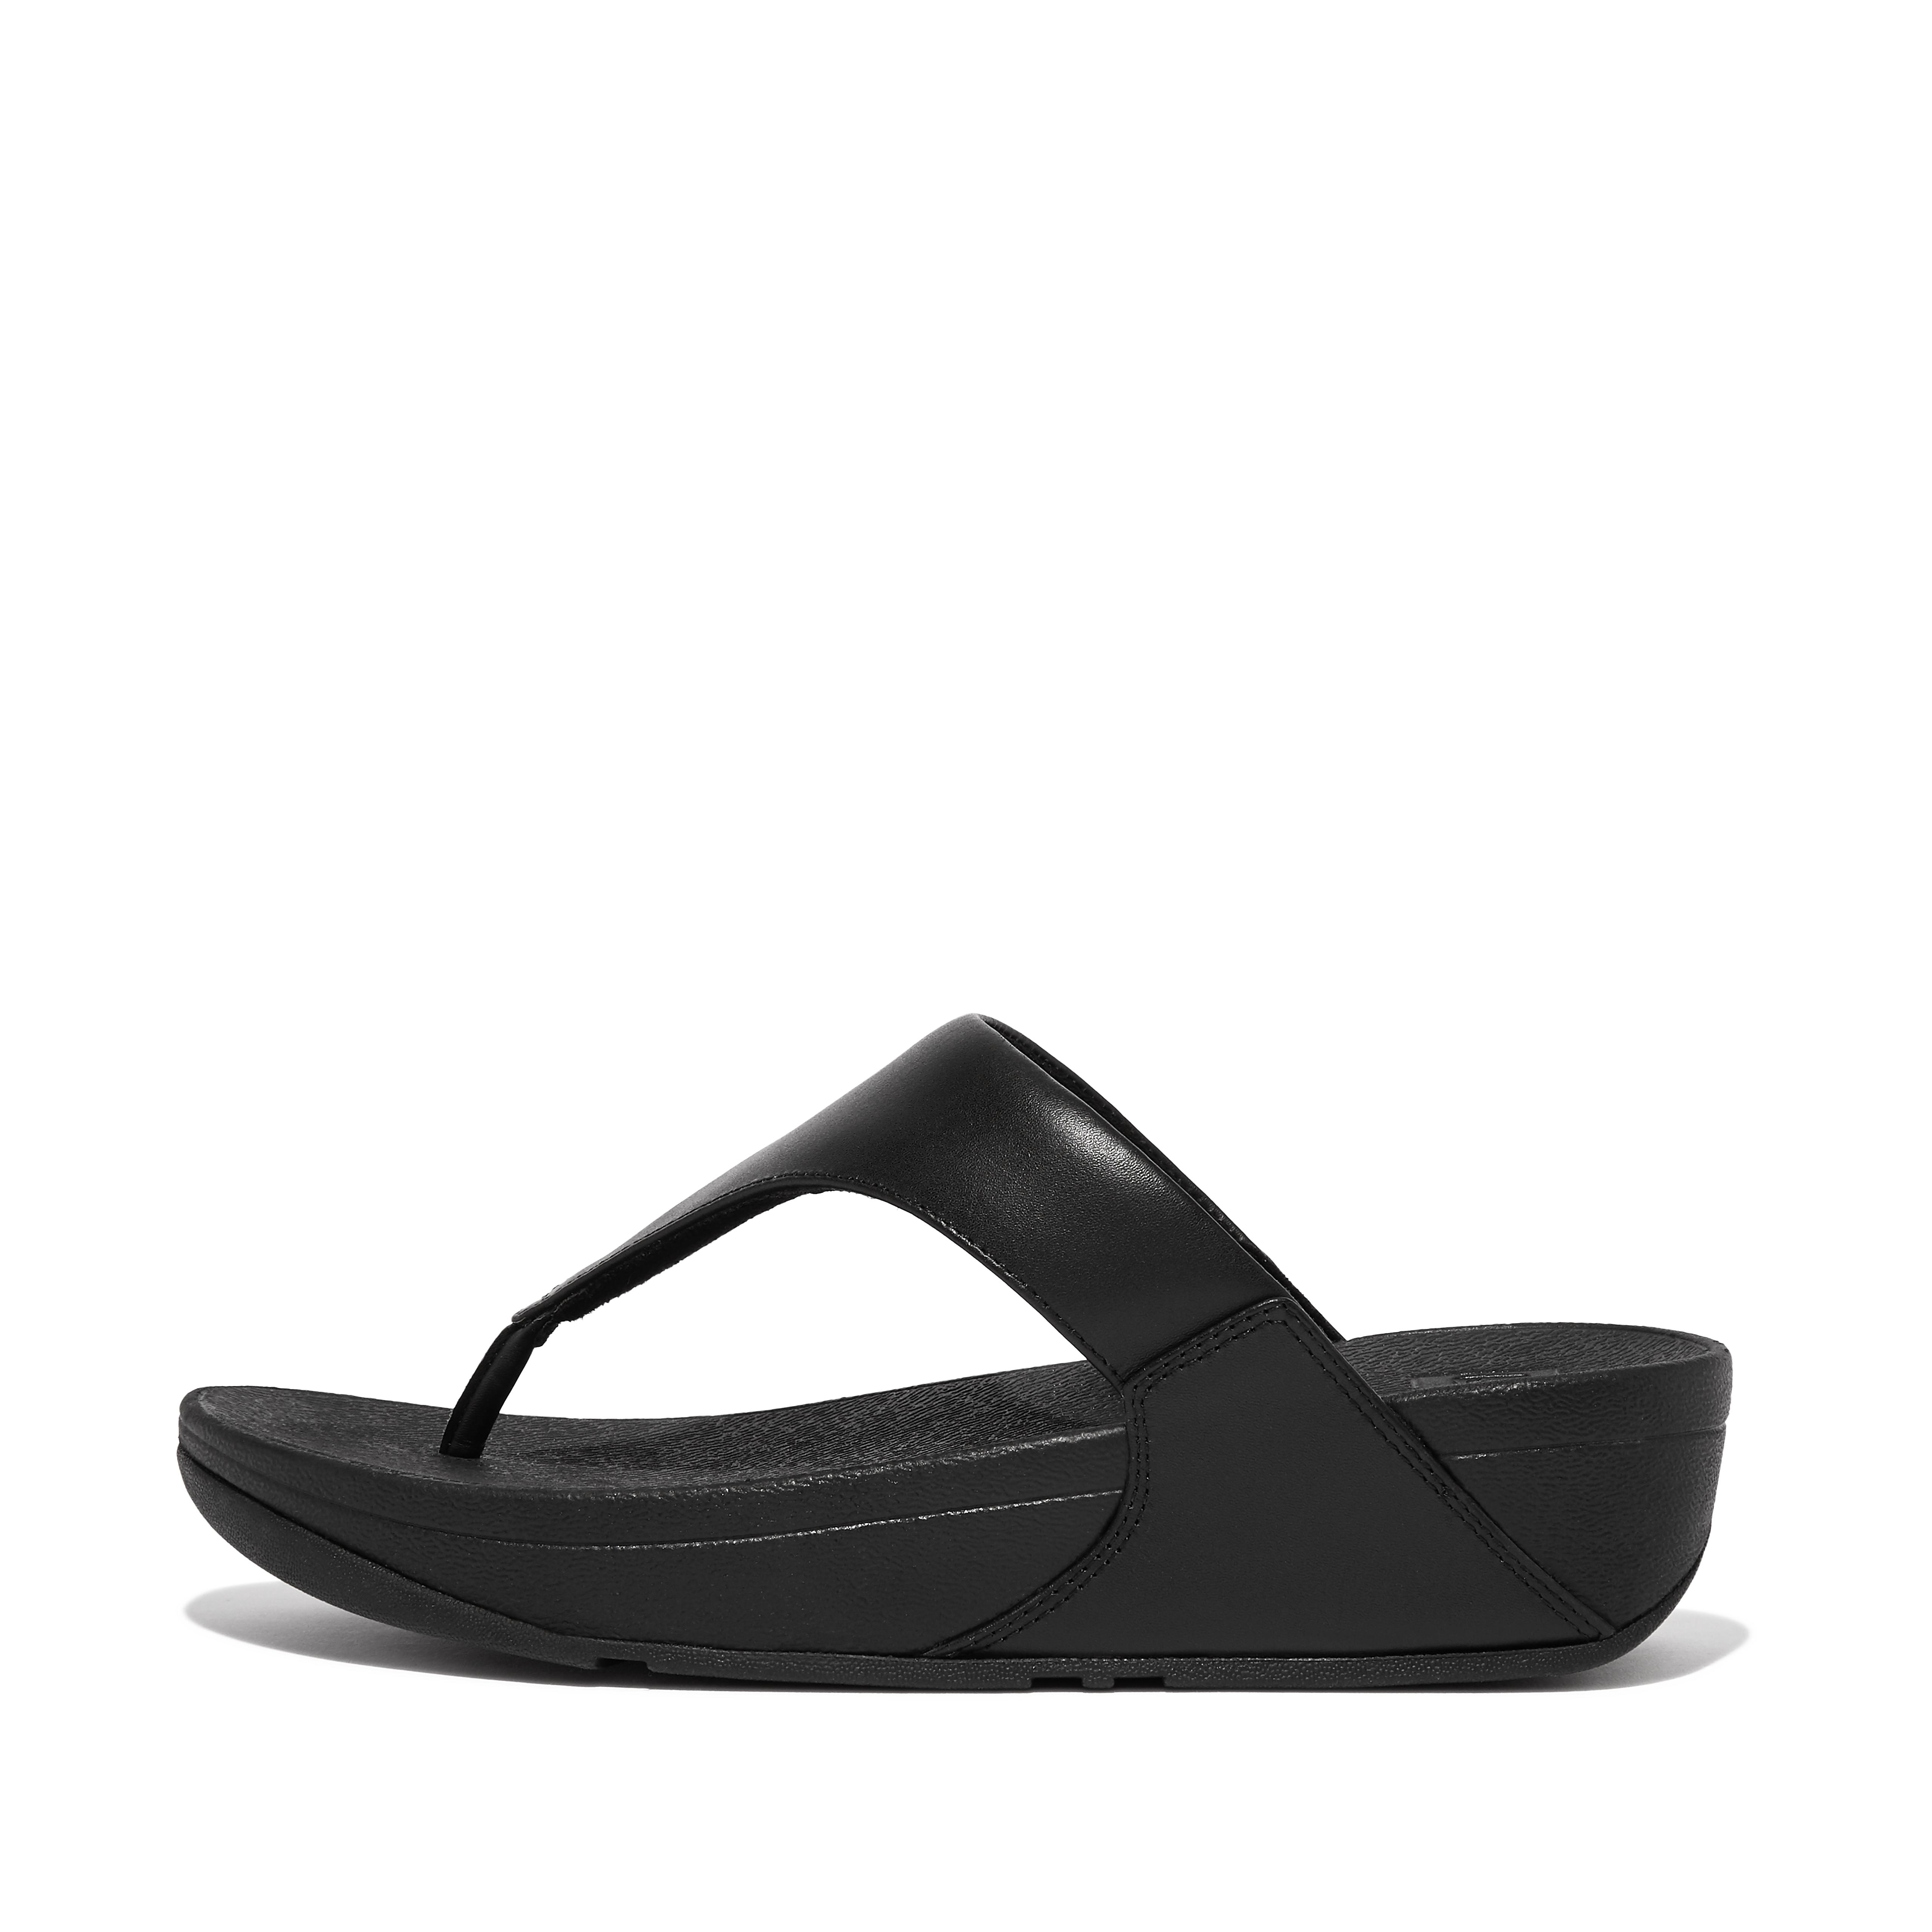 FitFlop Womens Black Lulu Shimmersuede Flip Flop Sandals Size 10